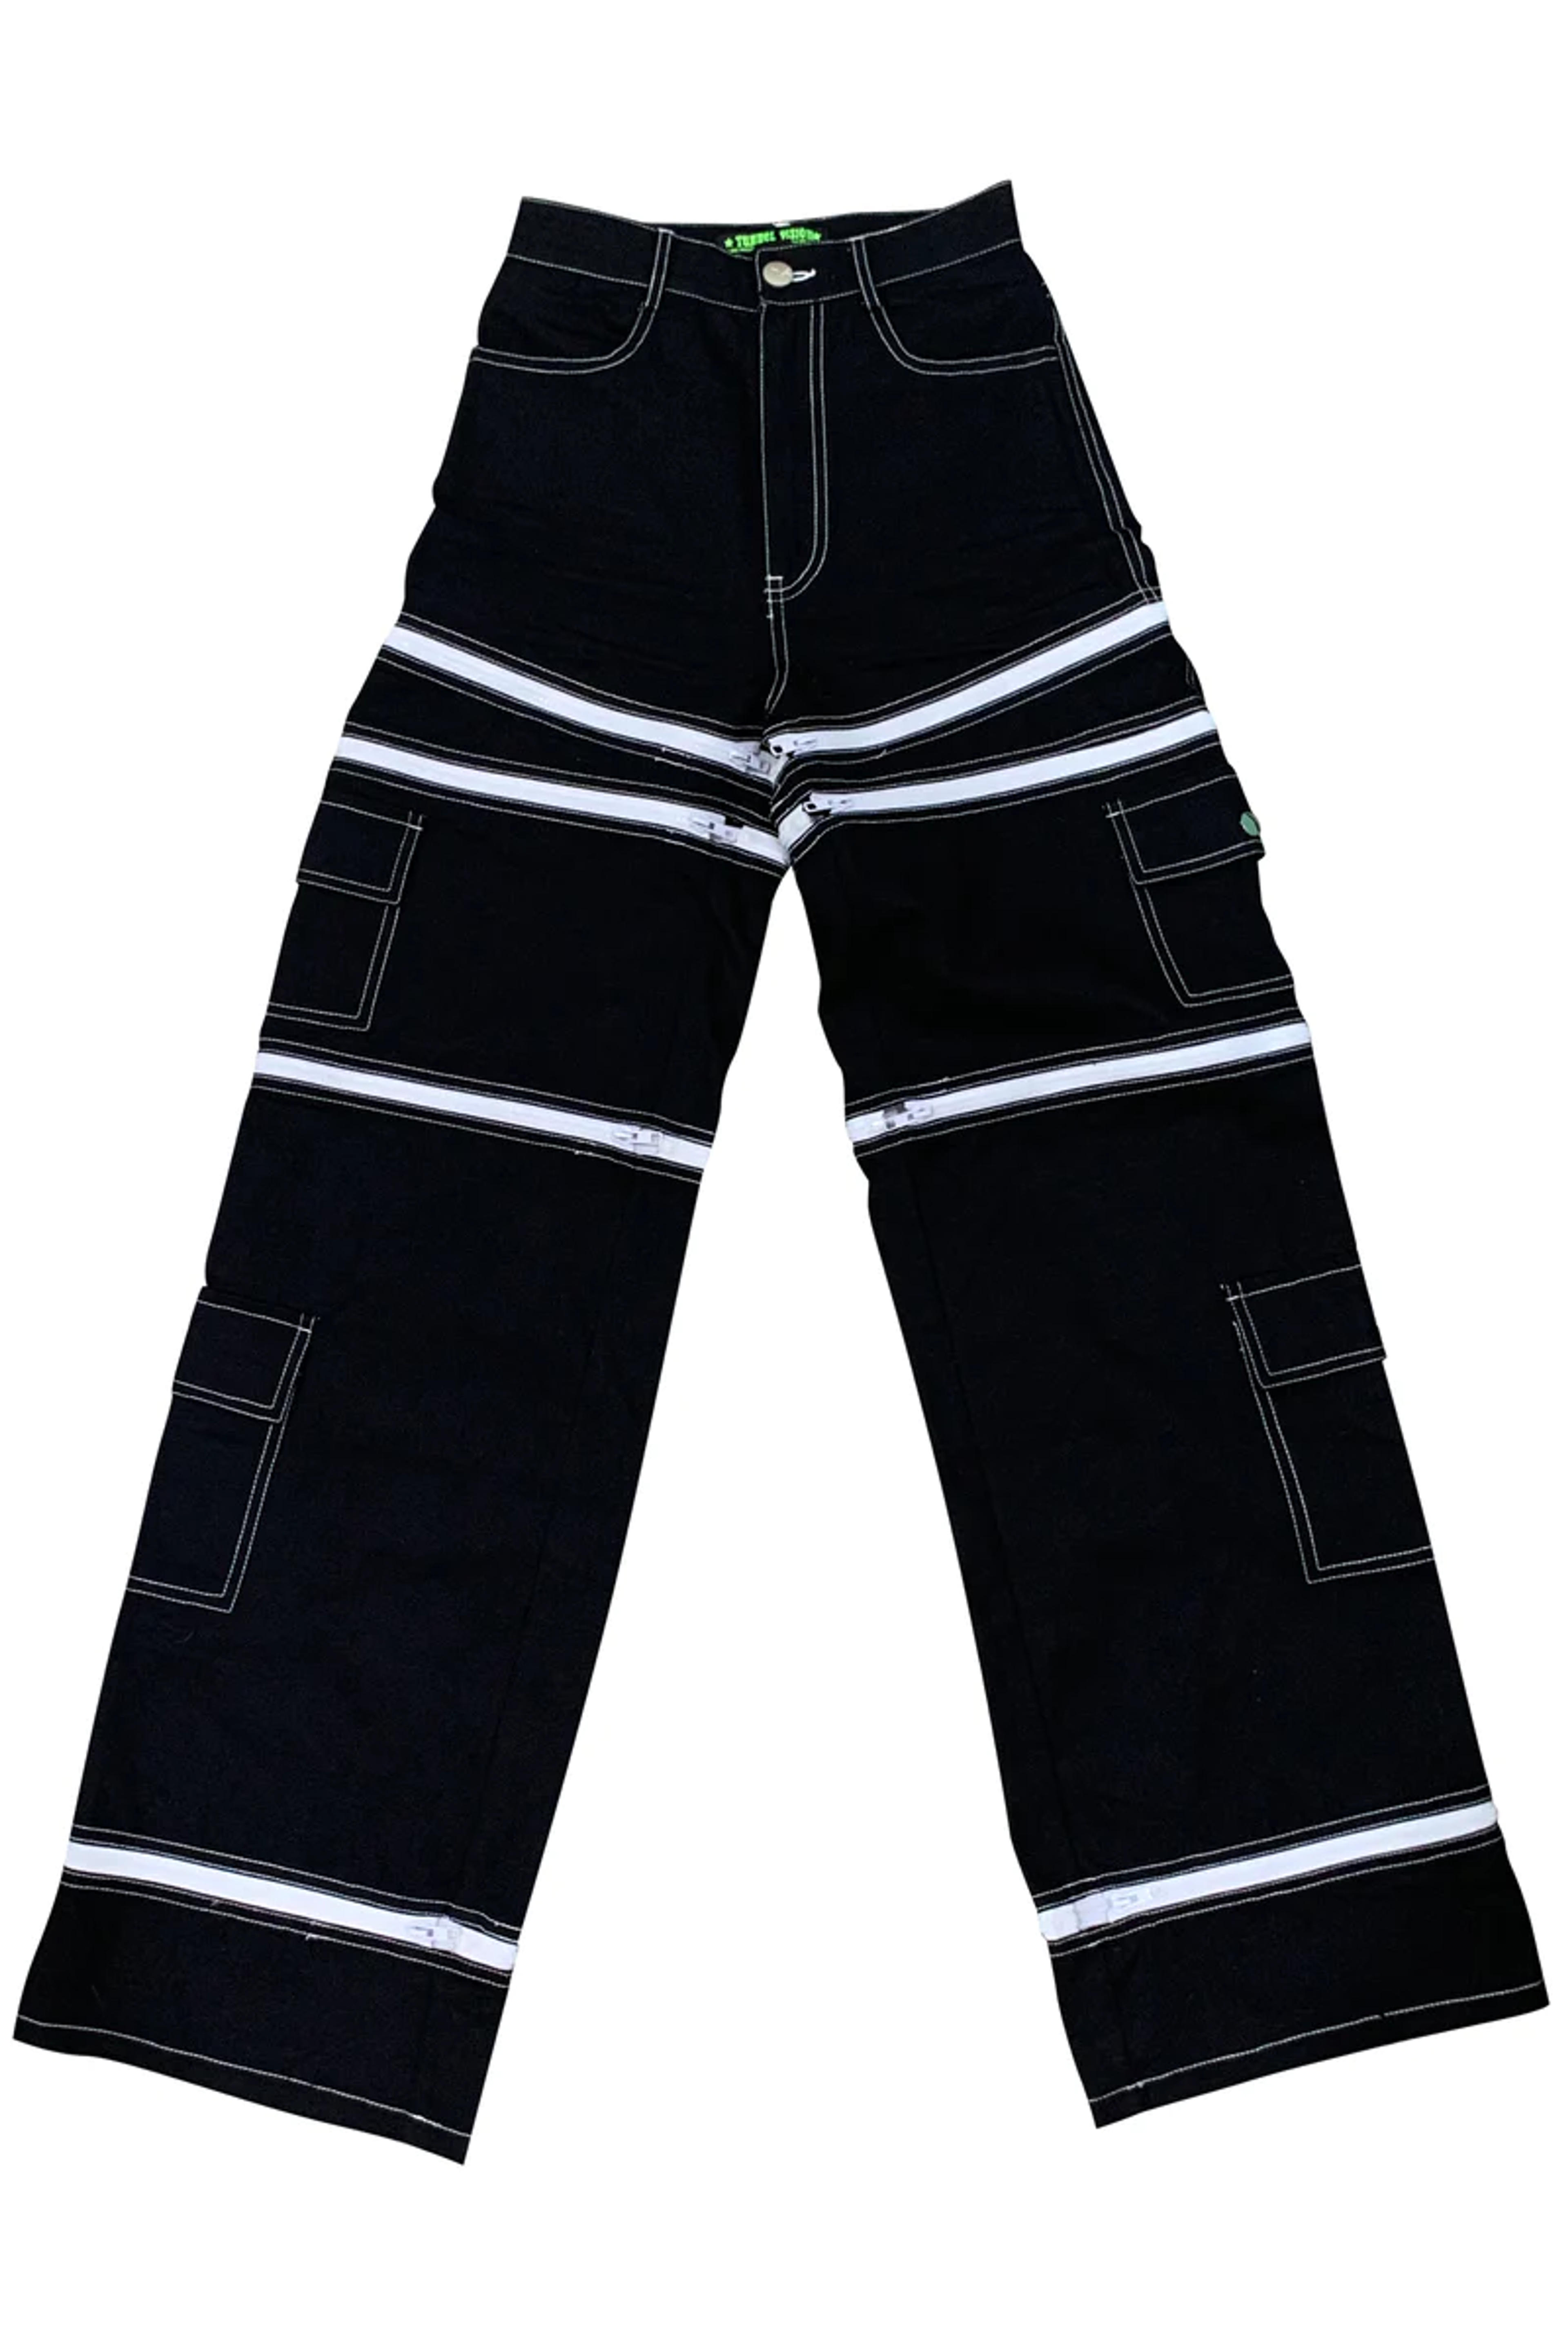 Black 5-in-1 Convertible Zip-Off Cargo Pants